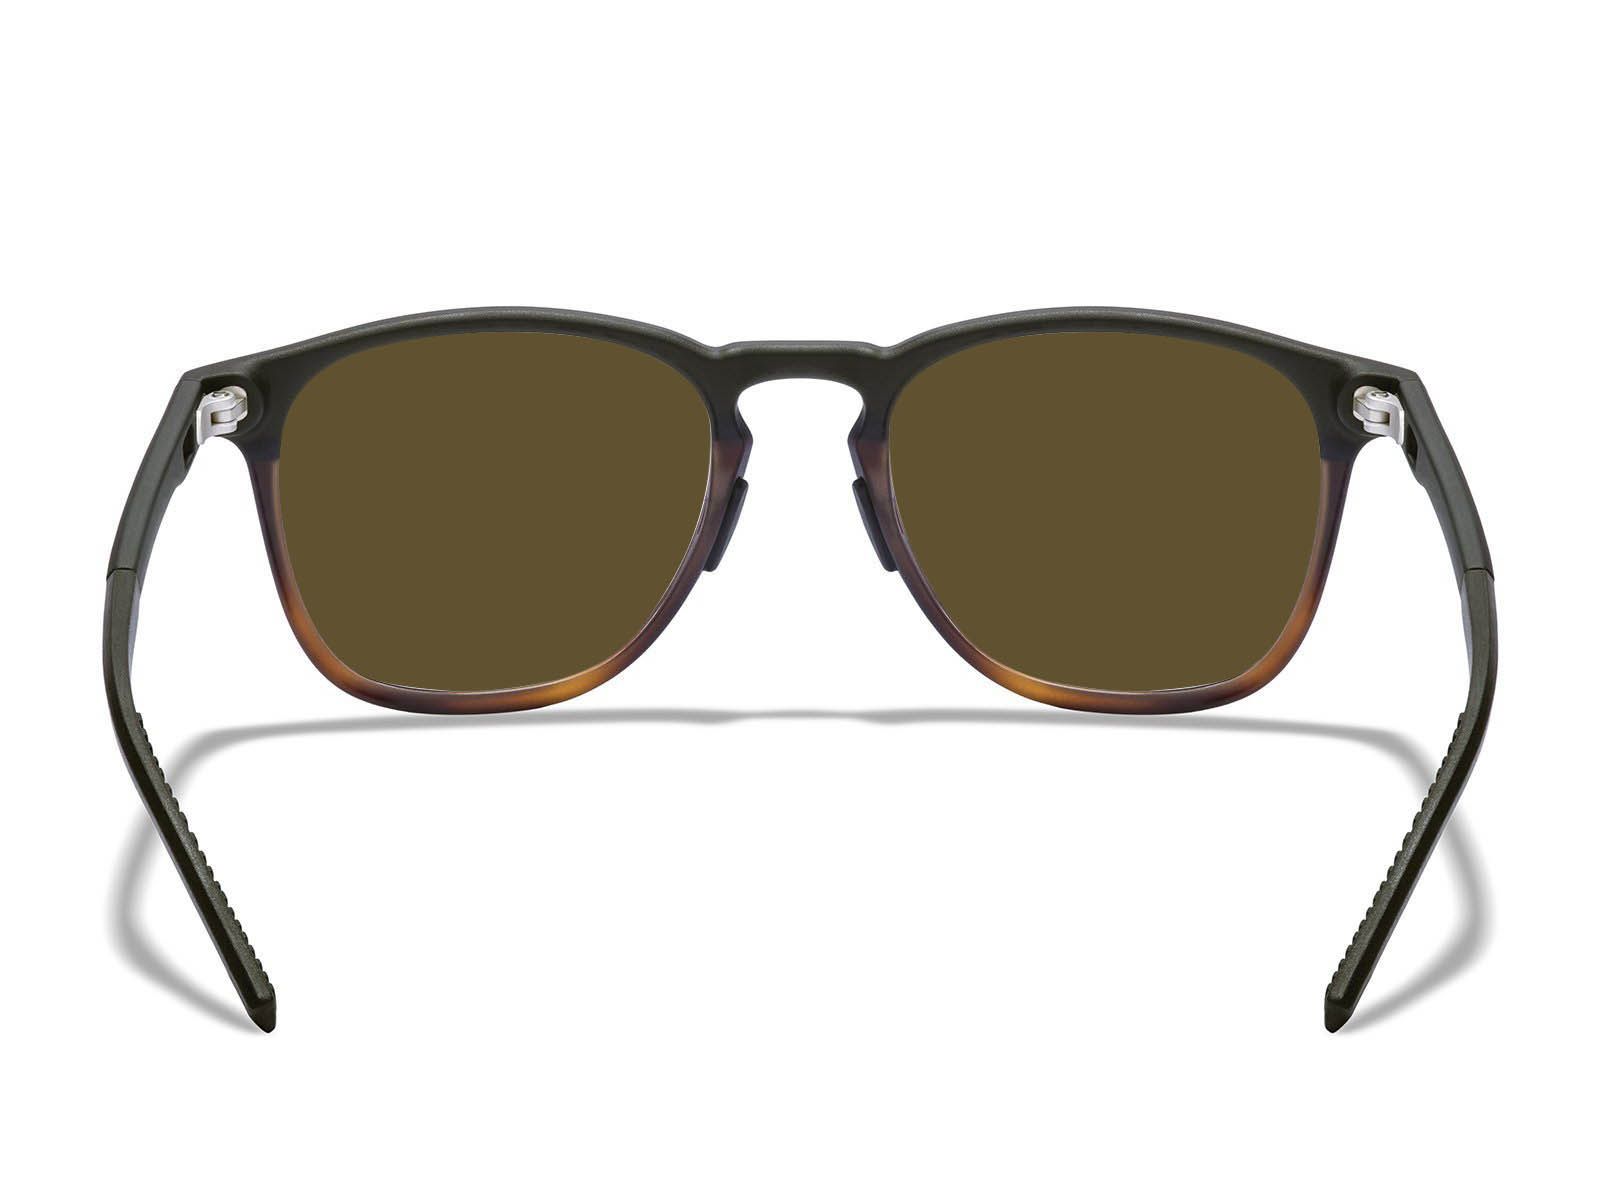 Hunter Prescription Sunglasses | Lightweight Modern Rectangular ...